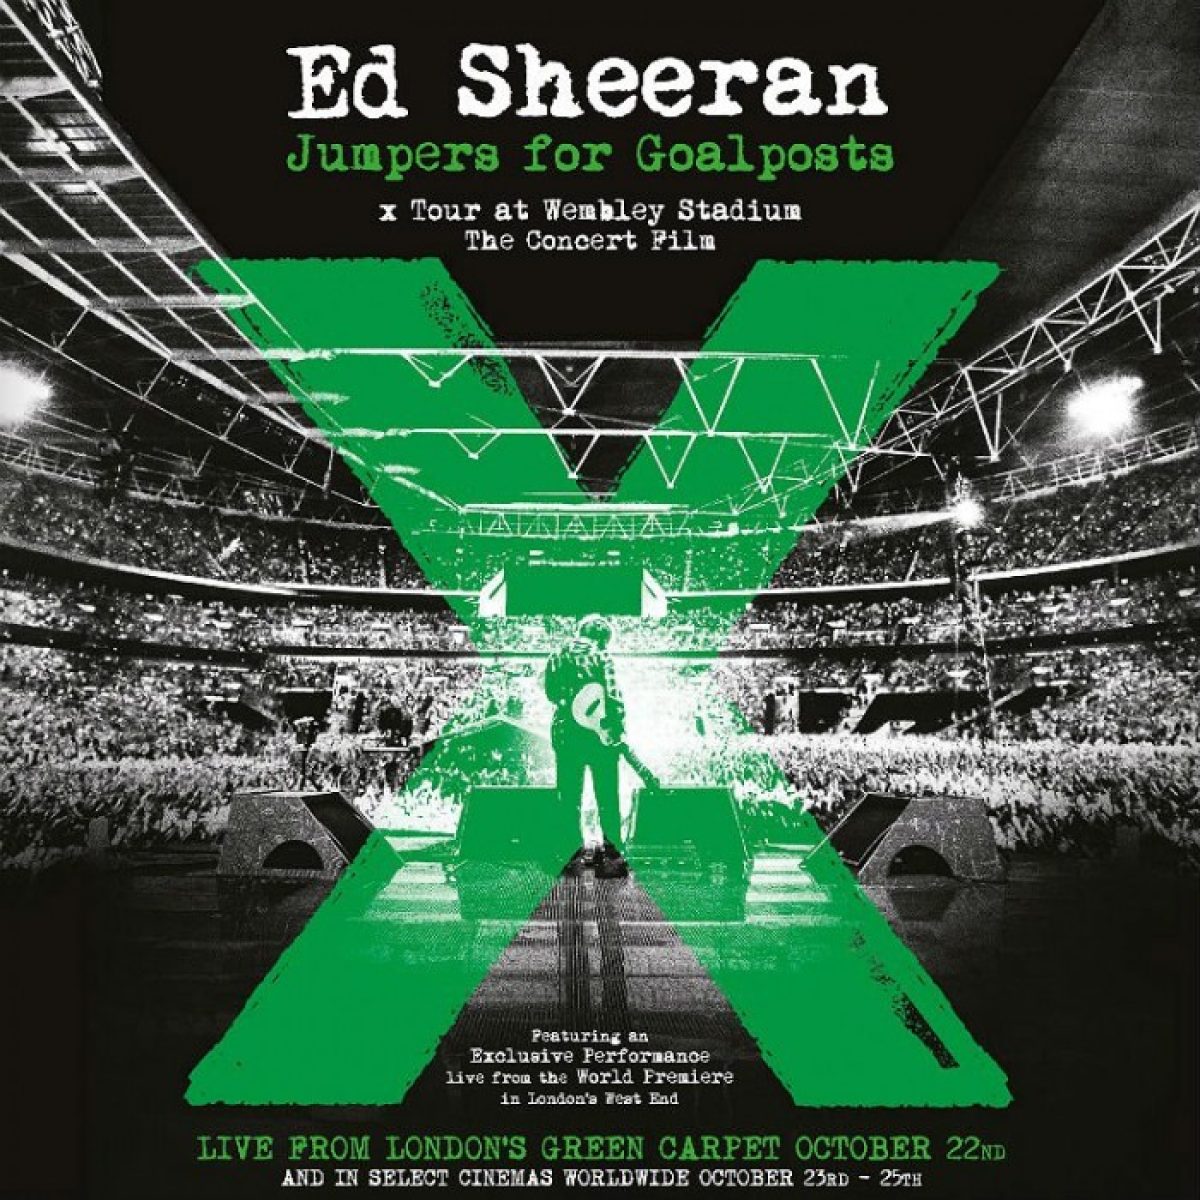 Ed Sheeran: Ein Underdog spielt Wembley